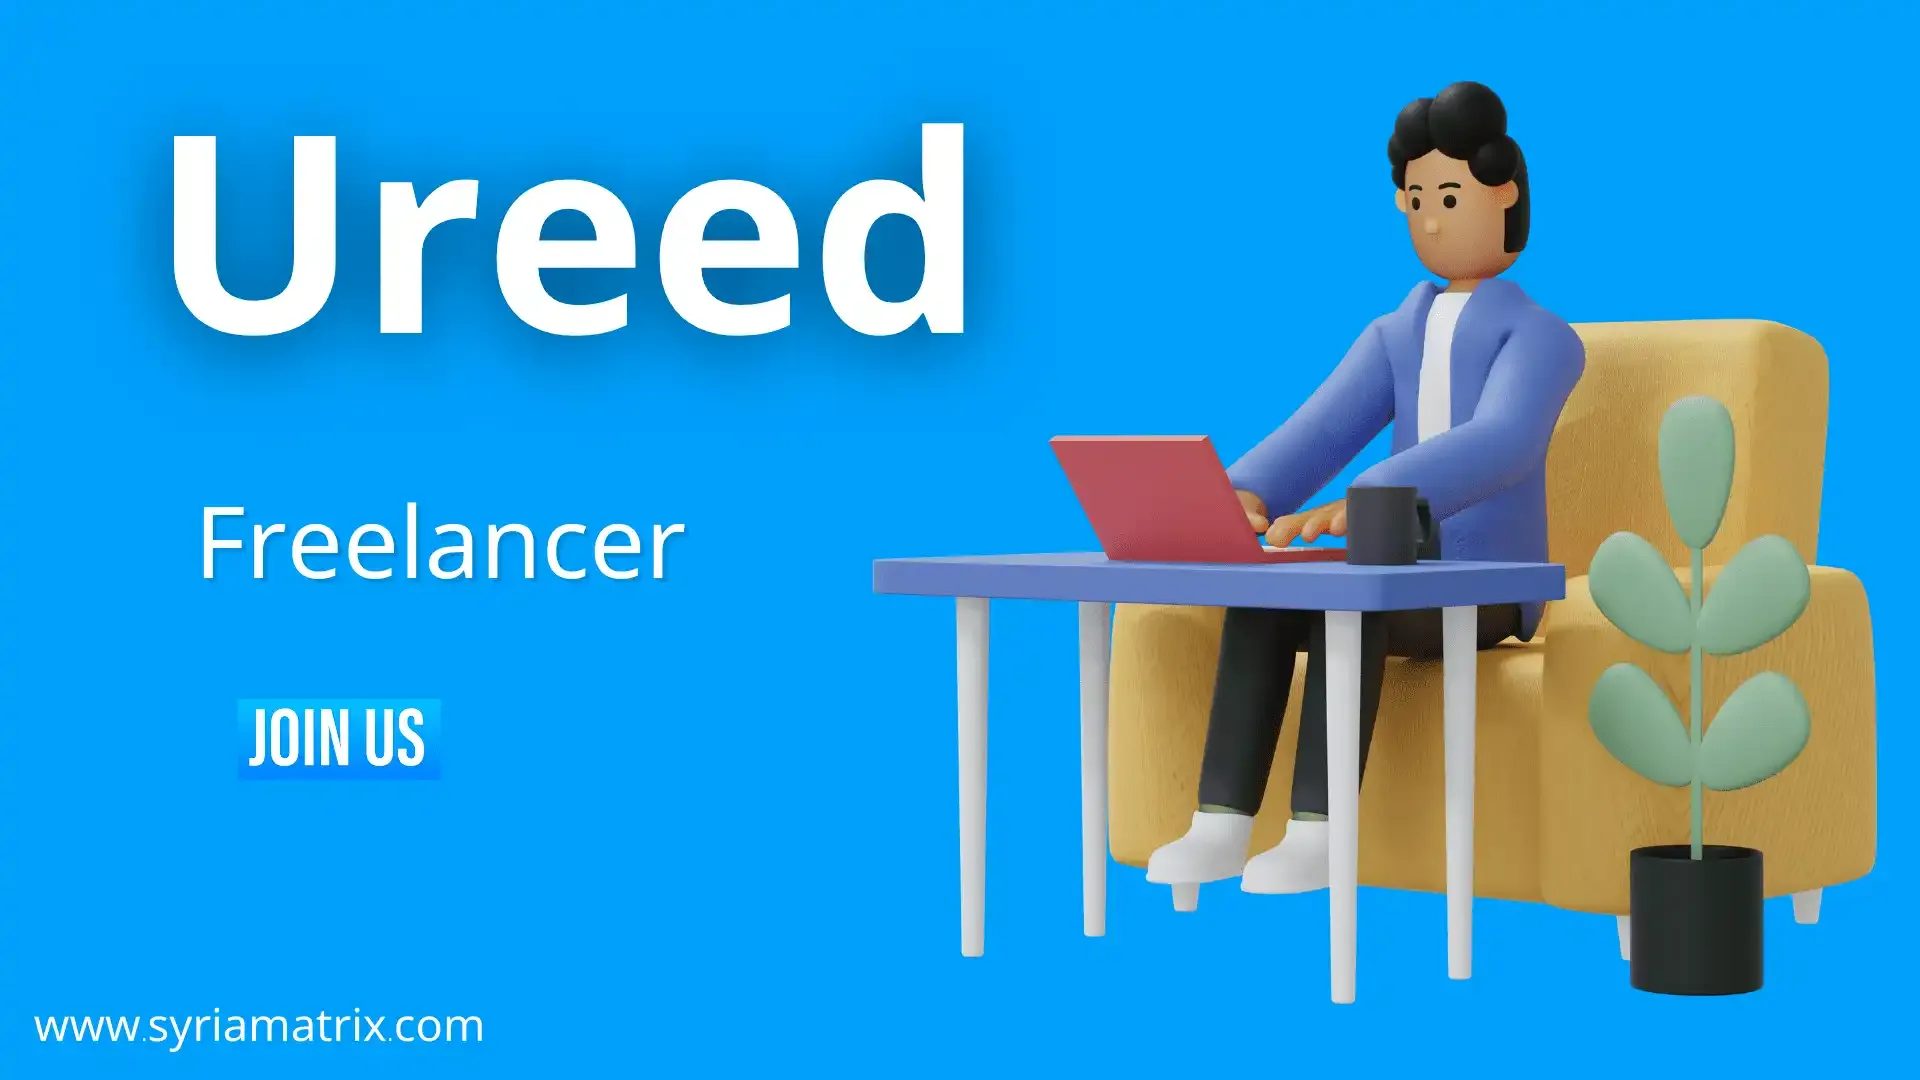 شرح موقع ureed أفضل موقع عربي للعمل الحر من المنزل